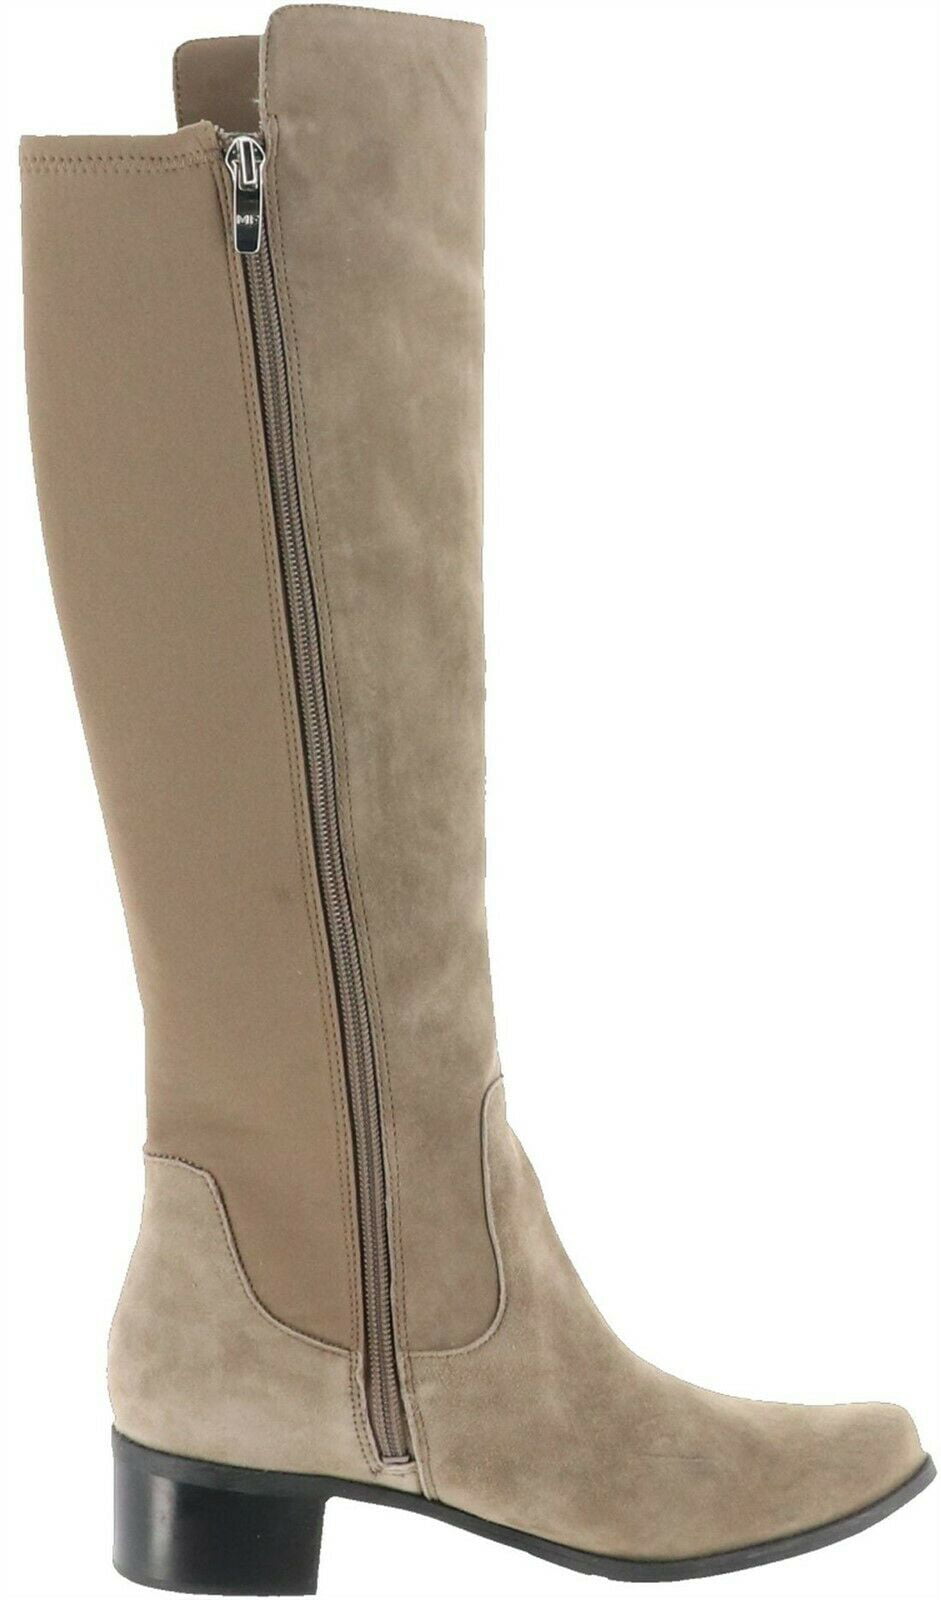 Marc Fisher Medium Calf Leather Shaft Boots Women's A295884 - Walmart.com